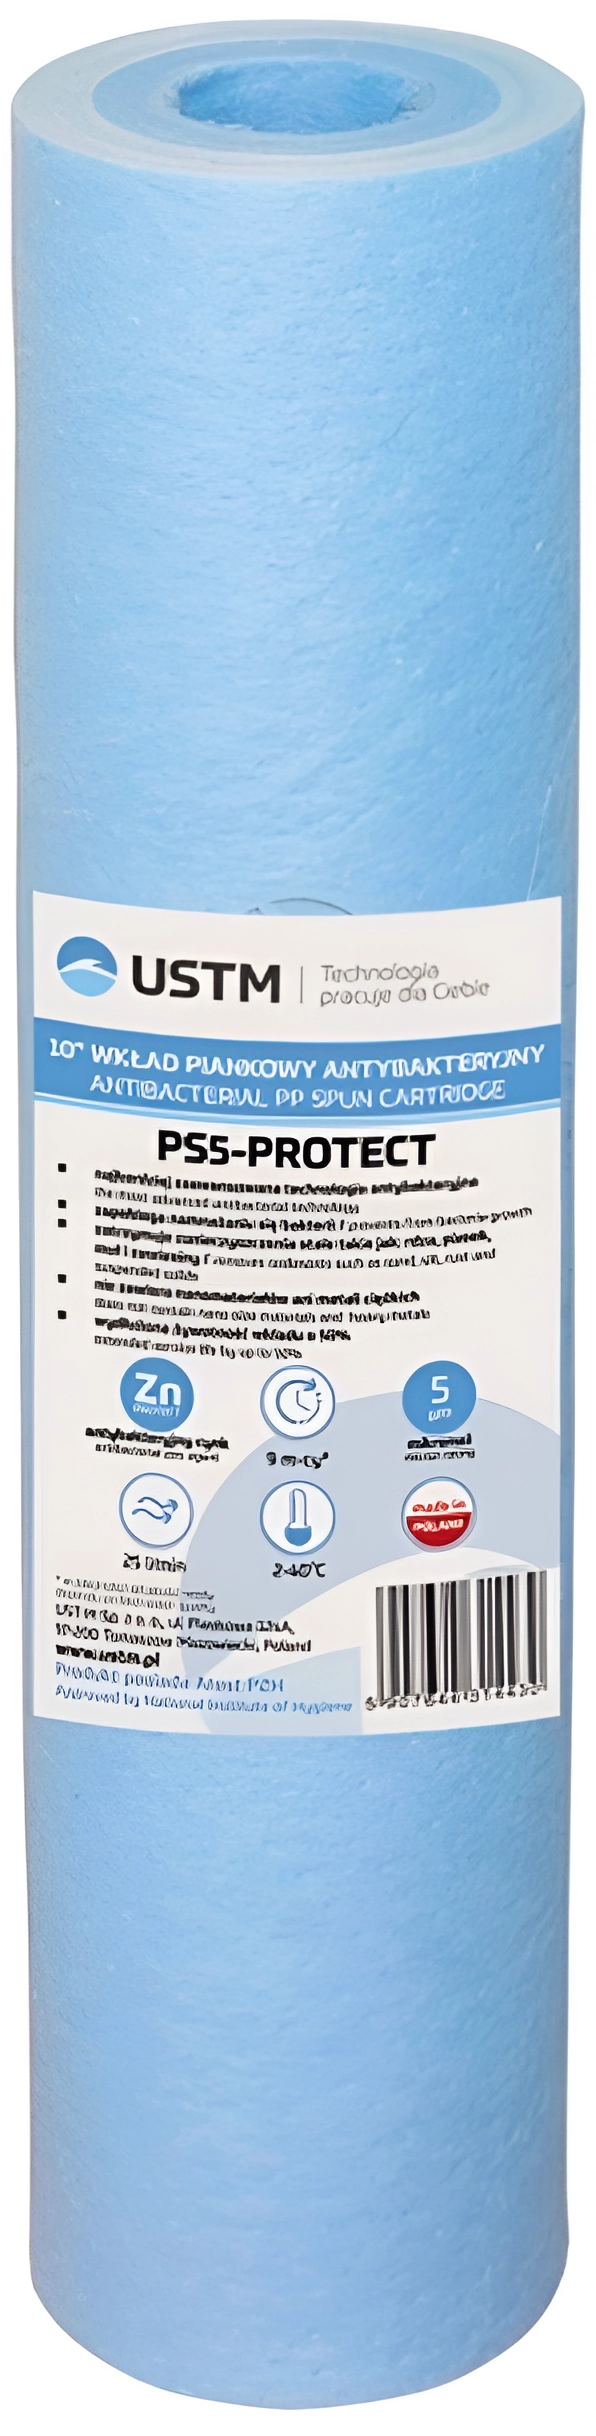 Картридж для фільтра USTM PS-5-Protect 10"